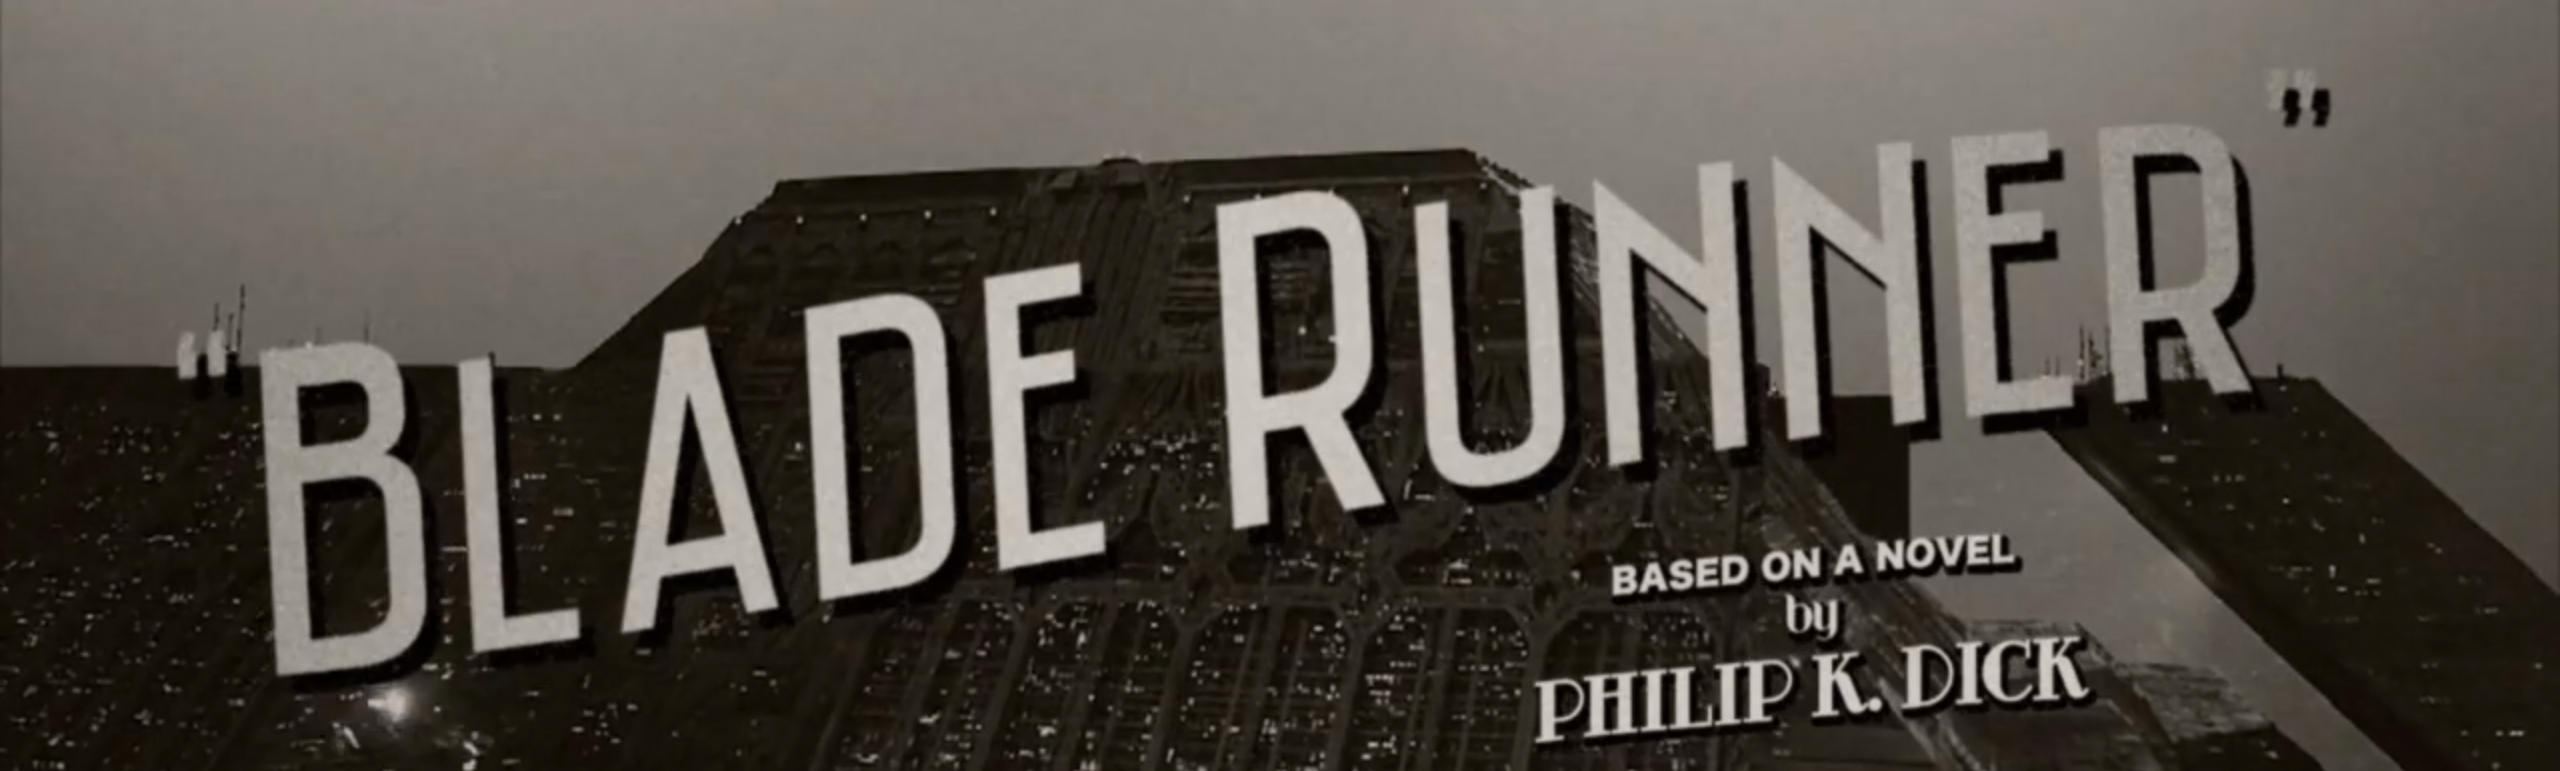 Blade Runner: Film Noir remake